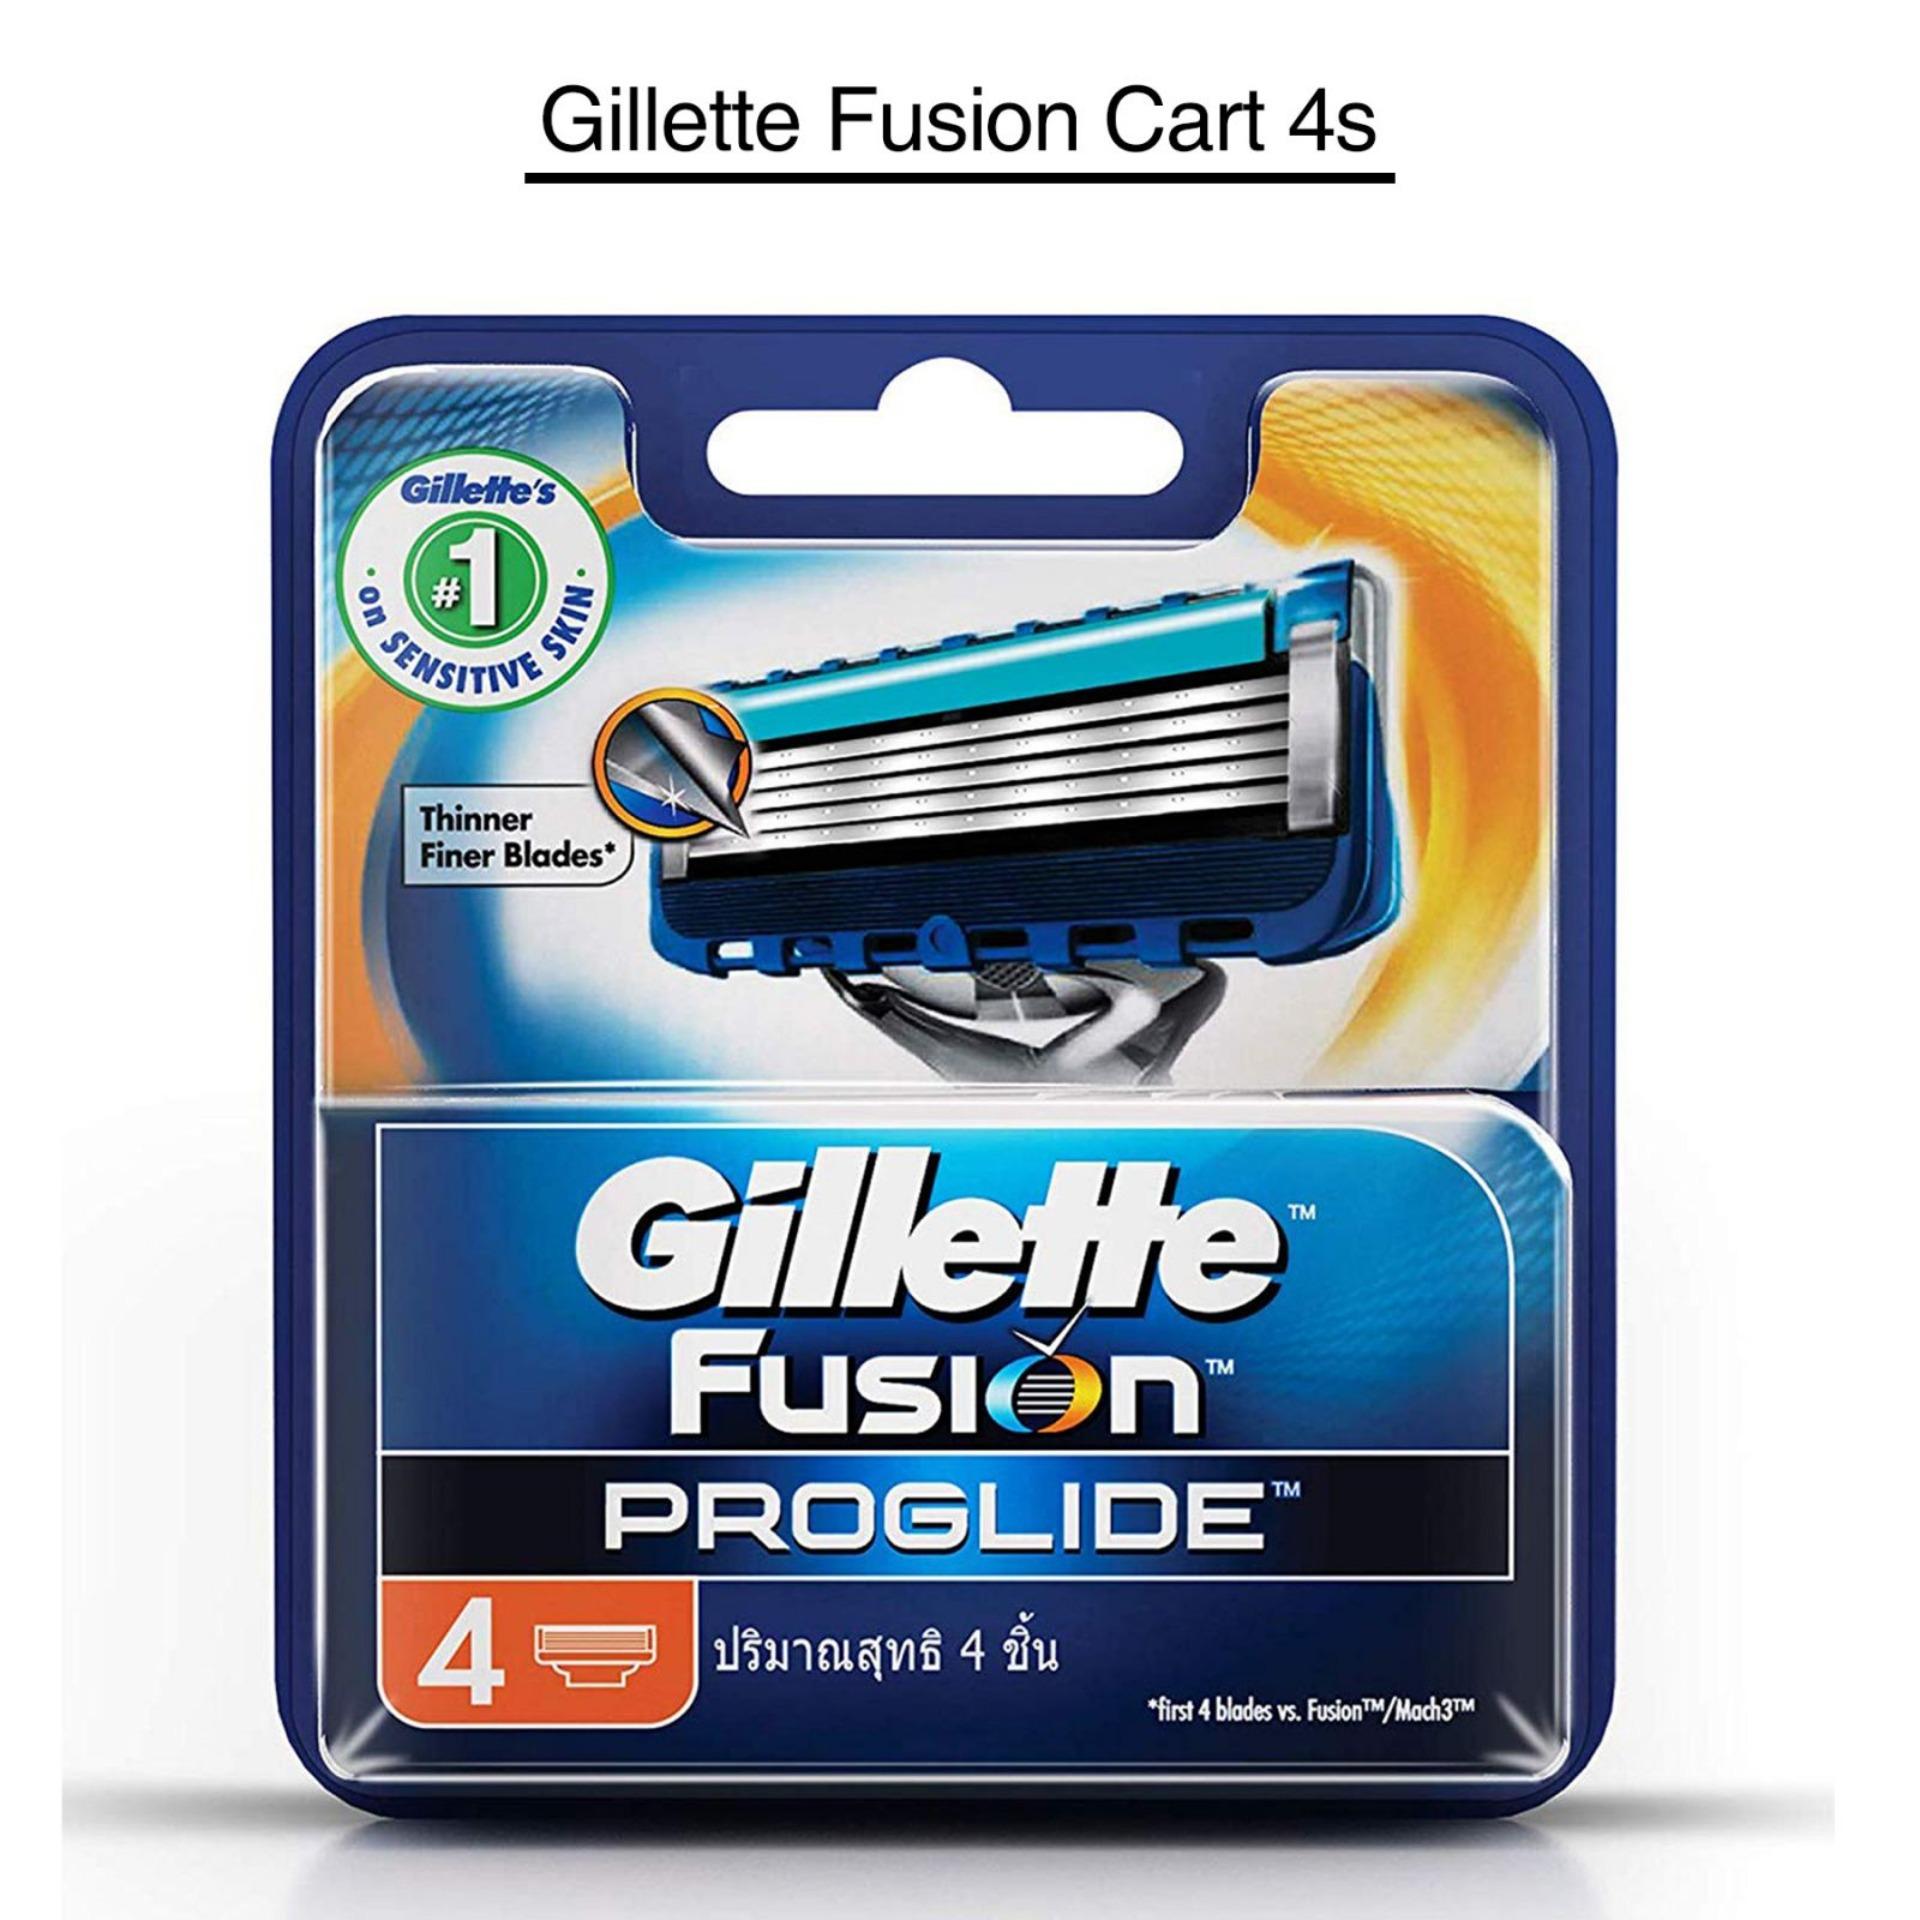 Gillette Fusion Cart 4s